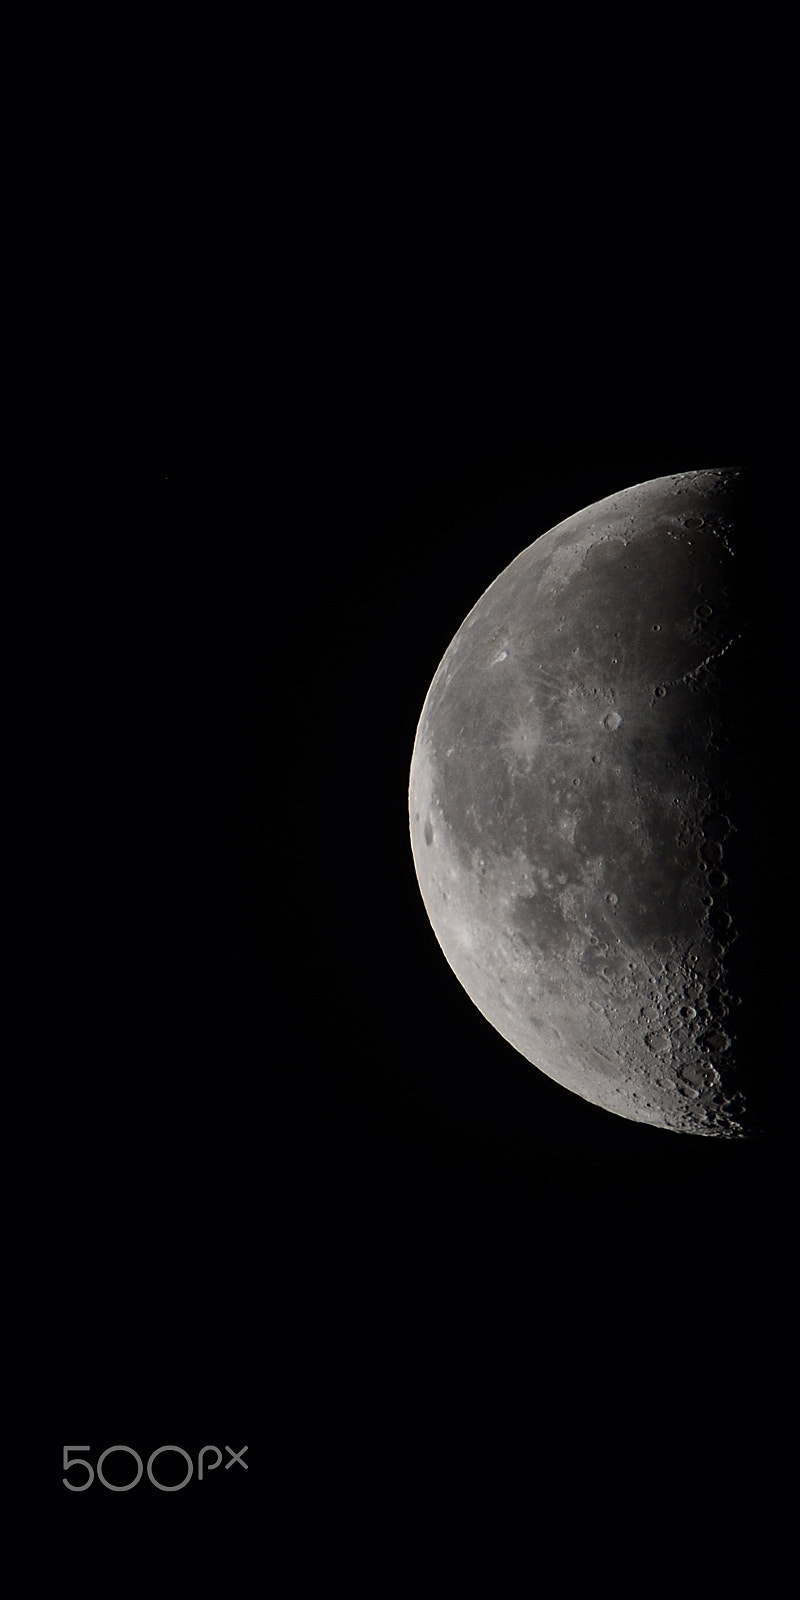 Nikon D5200 + Tamron SP 150-600mm F5-6.3 Di VC USD sample photo. Minimalist moon - lune minimalist photography